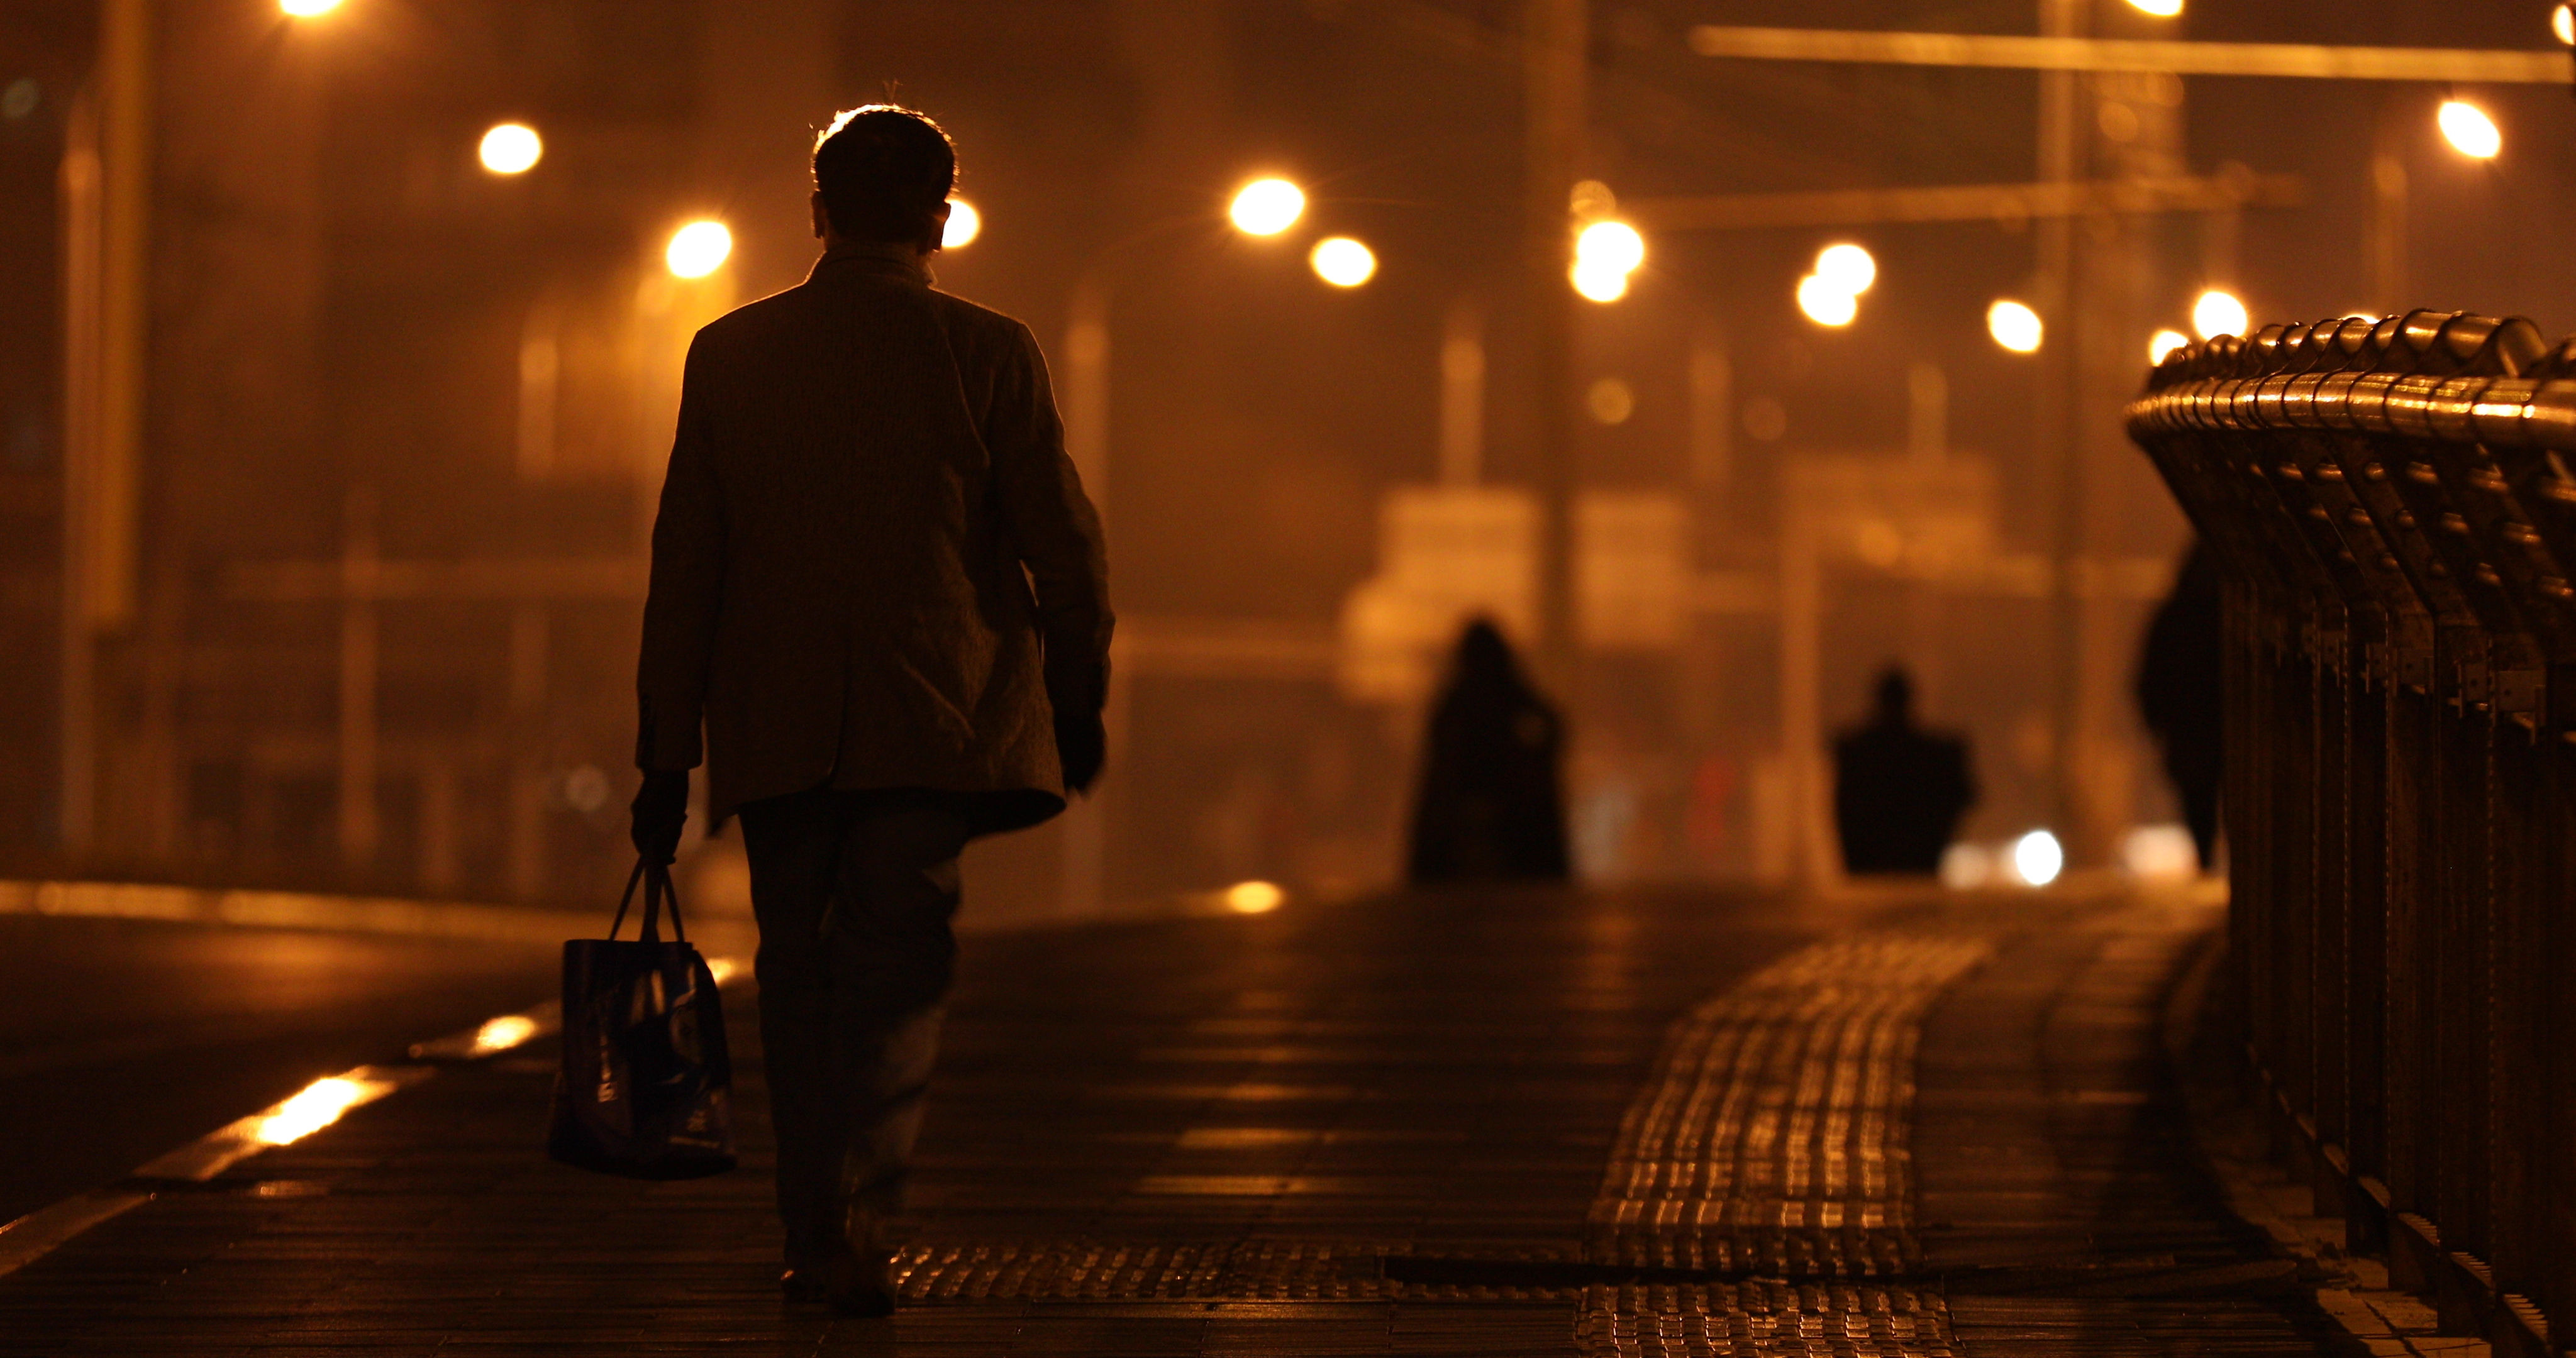 城市夜晚深夜一个人走路回家劳累背影生活压力人物夜间街道街景夜景